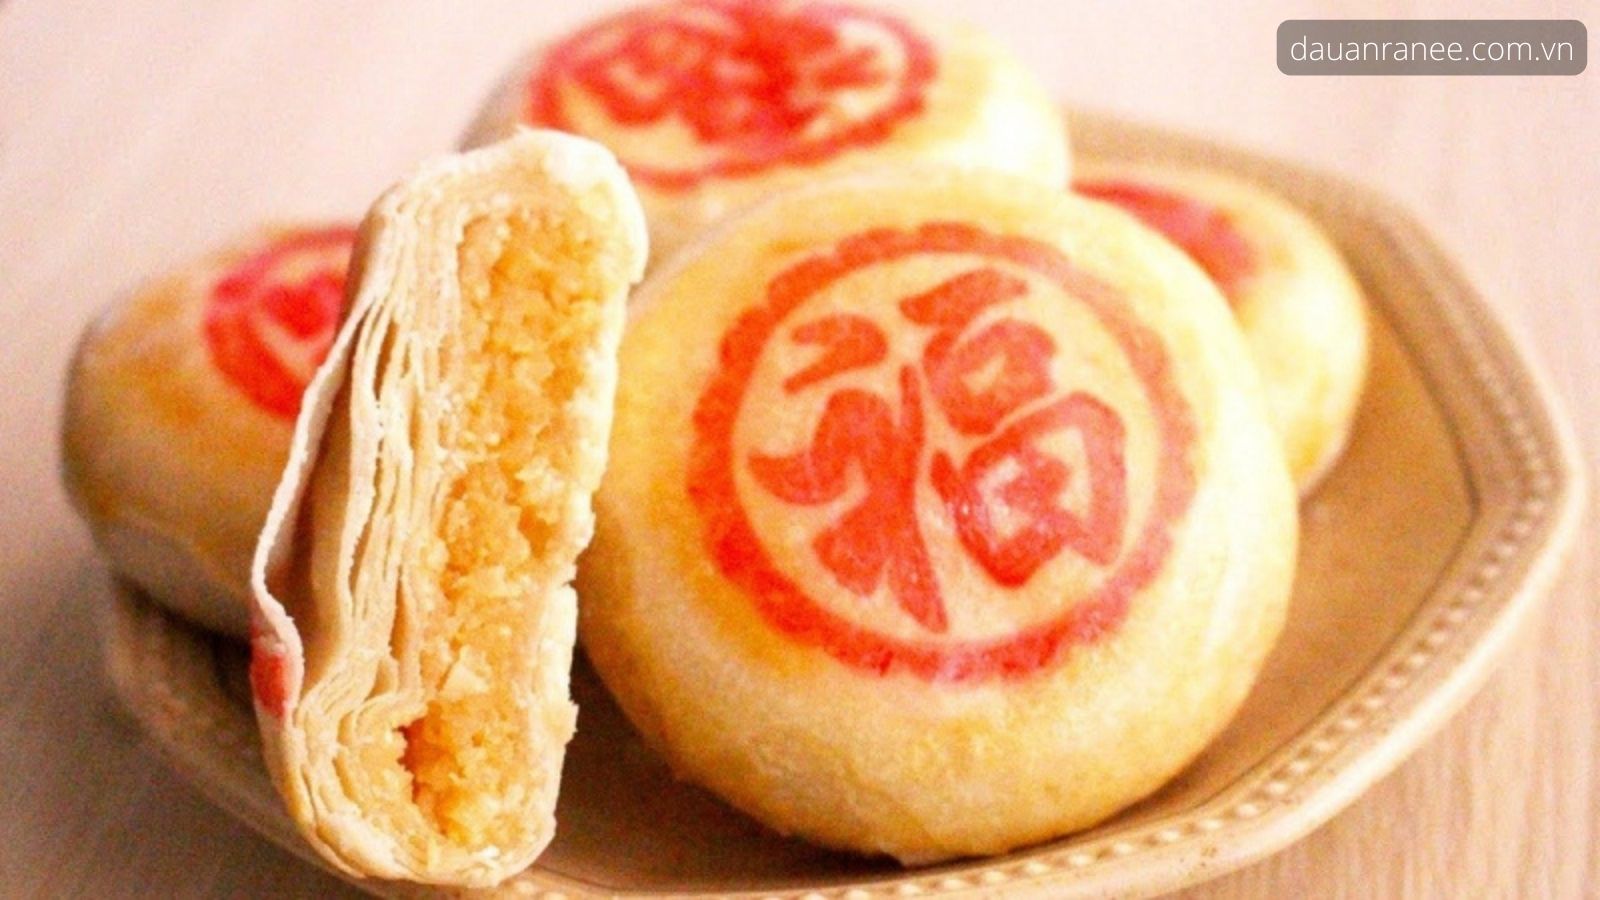 Bánh pía sầu riêng - món đặc sản Sài Gòn làm quà tặng gọn nhẹ.